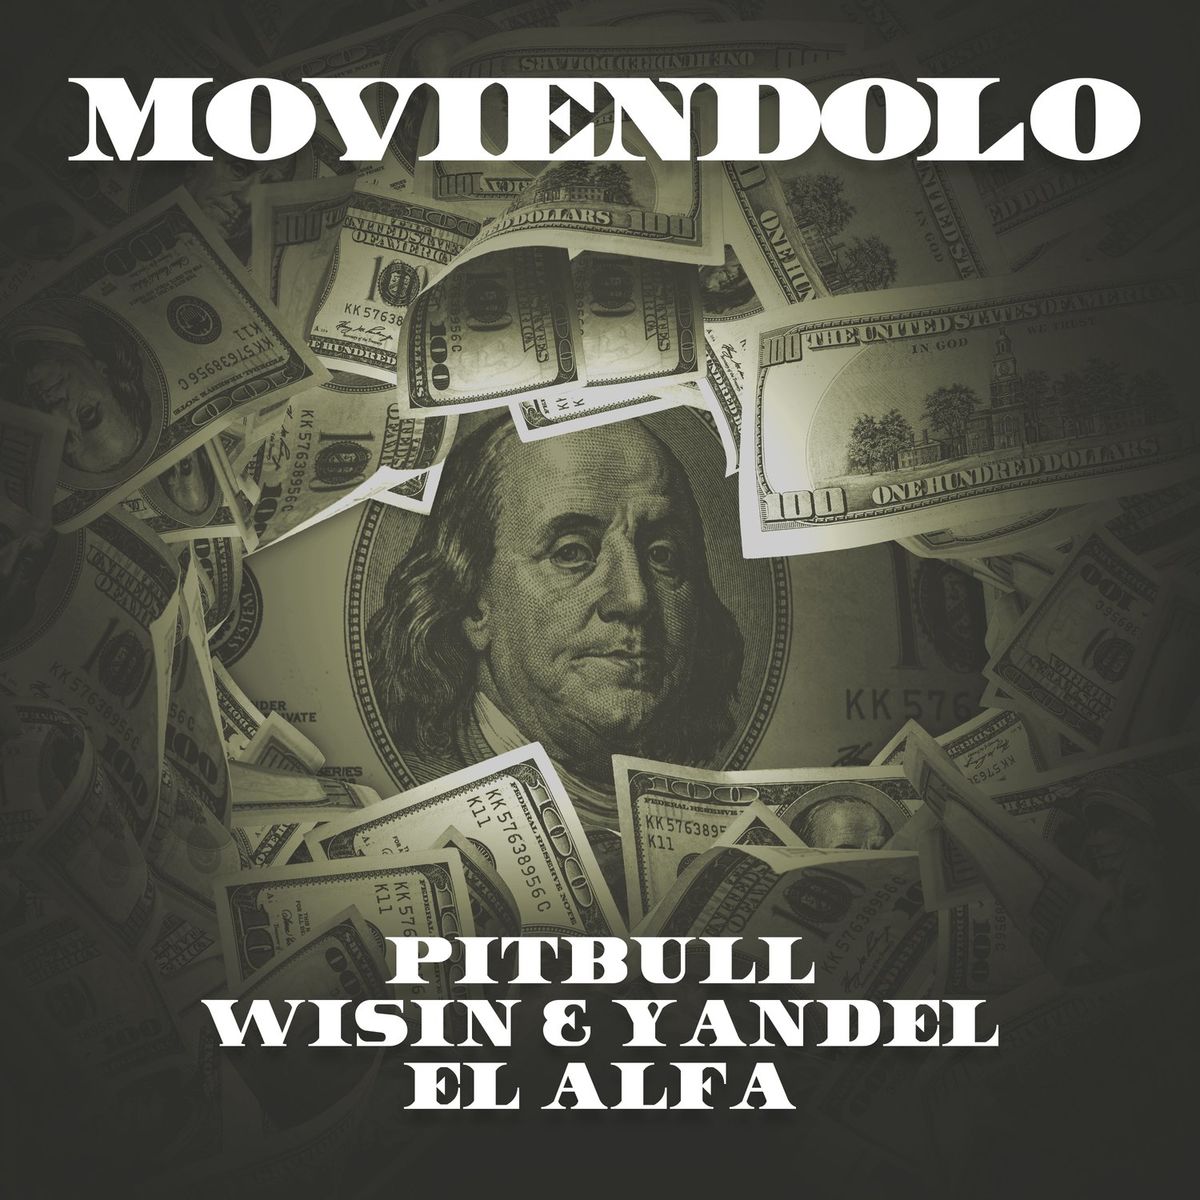 Pitbull & Wisin & Yandel & El Alfa - Moviendolo (Remix).mp3